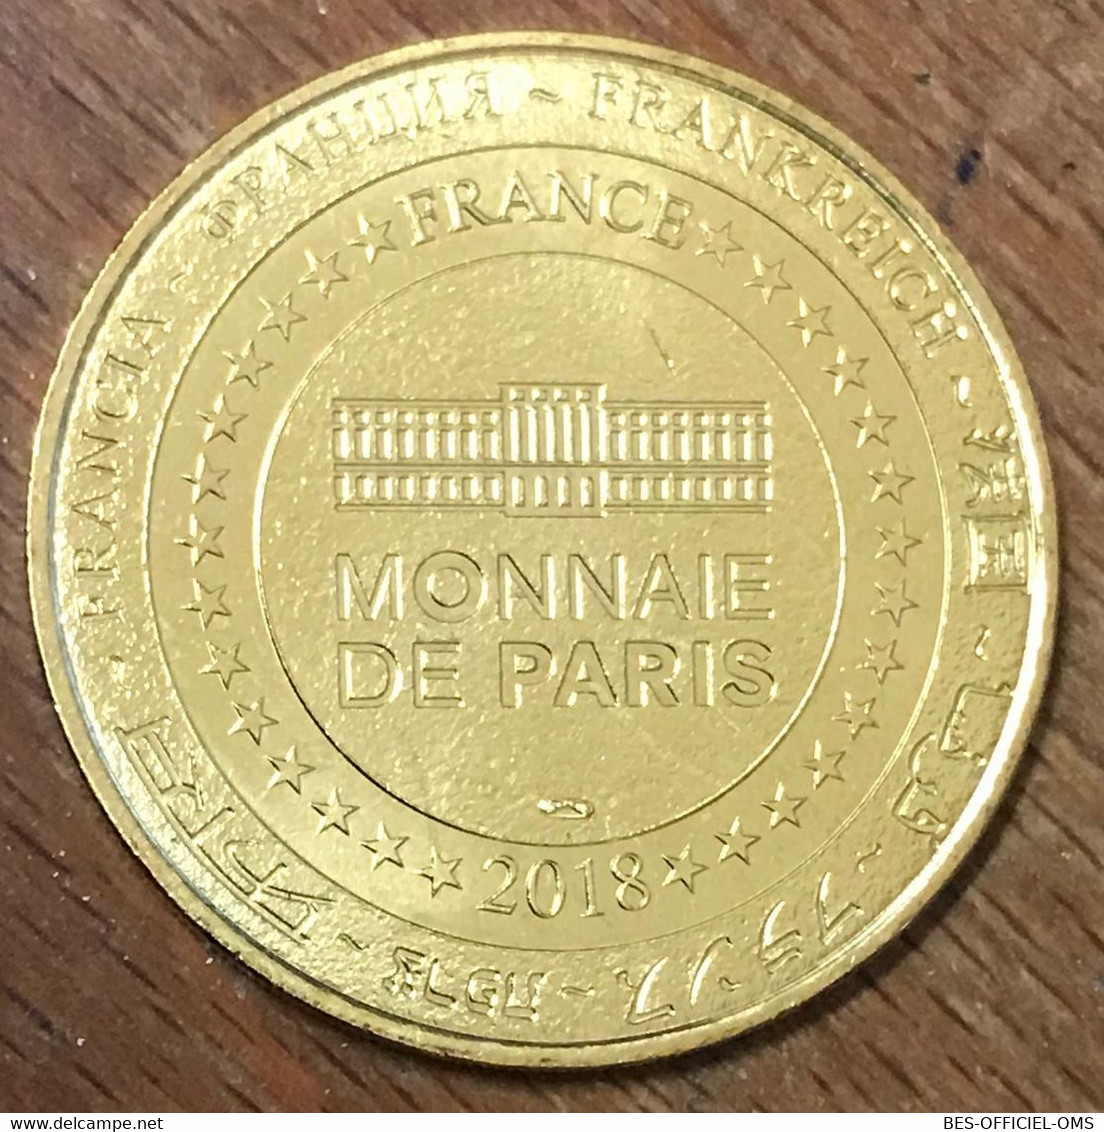 60 PLAILLY PARC ASTERIX OBELIX MDP 2018 MÉDAILLE SOUVENIR MONNAIE DE PARIS JETON TOURISTIQUE MEDALS COINS TOKENS - 2018